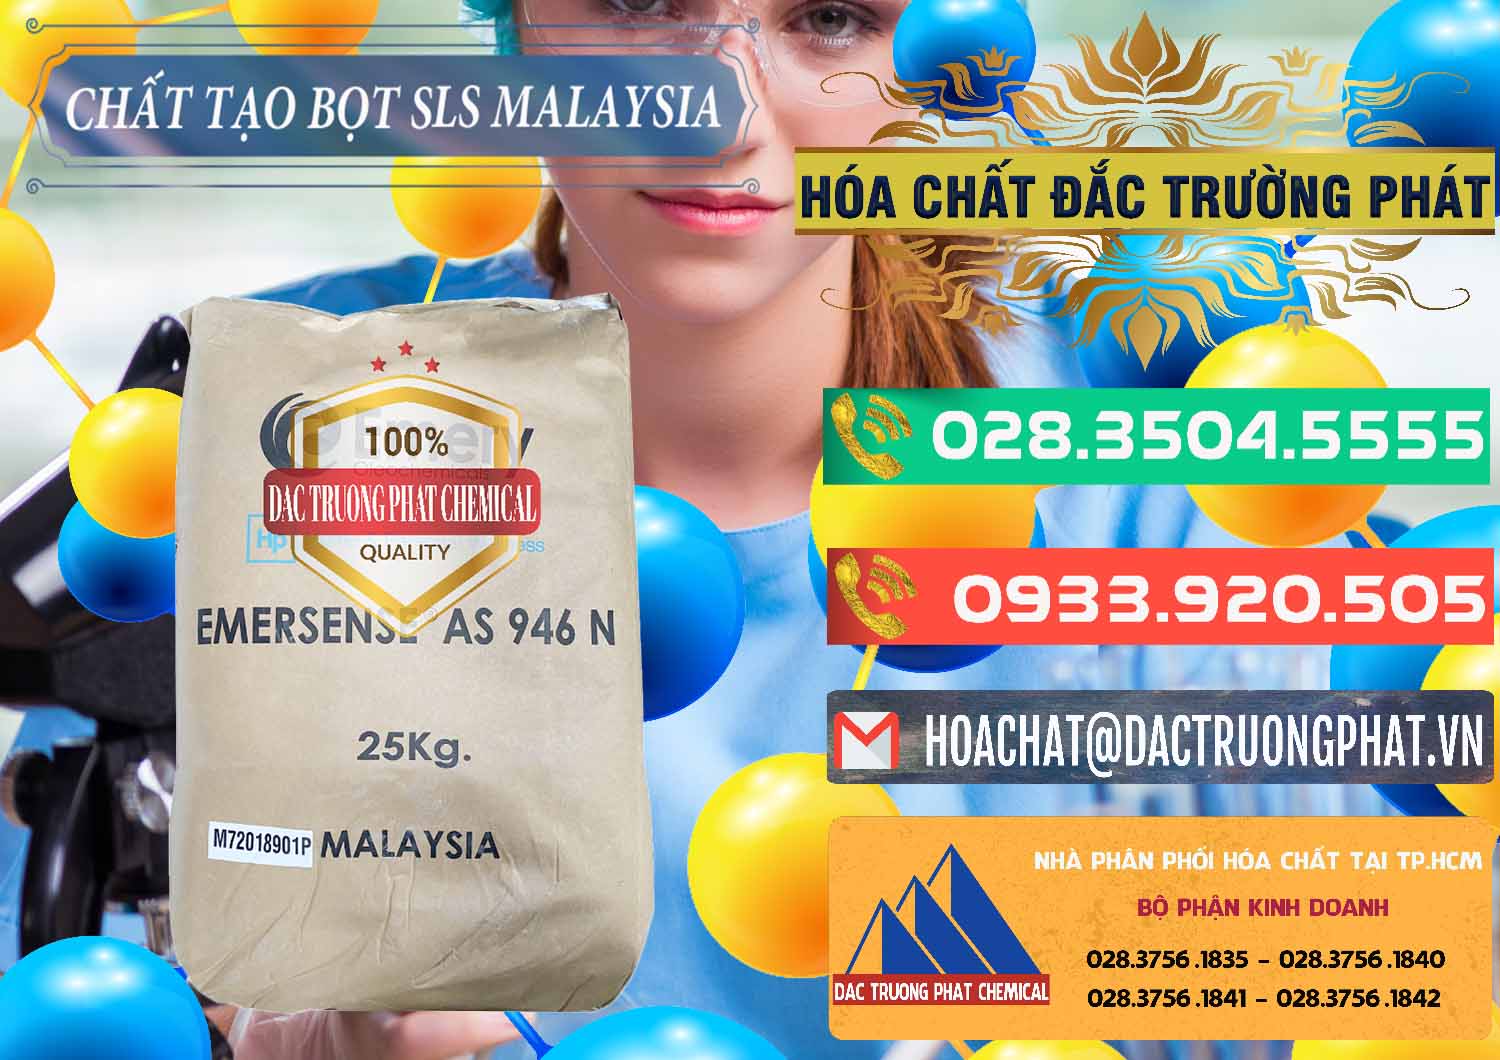 Công ty chuyên phân phối ( bán ) Chất Tạo Bọt SLS Emery - Emersense AS 946N Mã Lai Malaysia - 0423 - Đơn vị cung cấp ( nhập khẩu ) hóa chất tại TP.HCM - congtyhoachat.com.vn